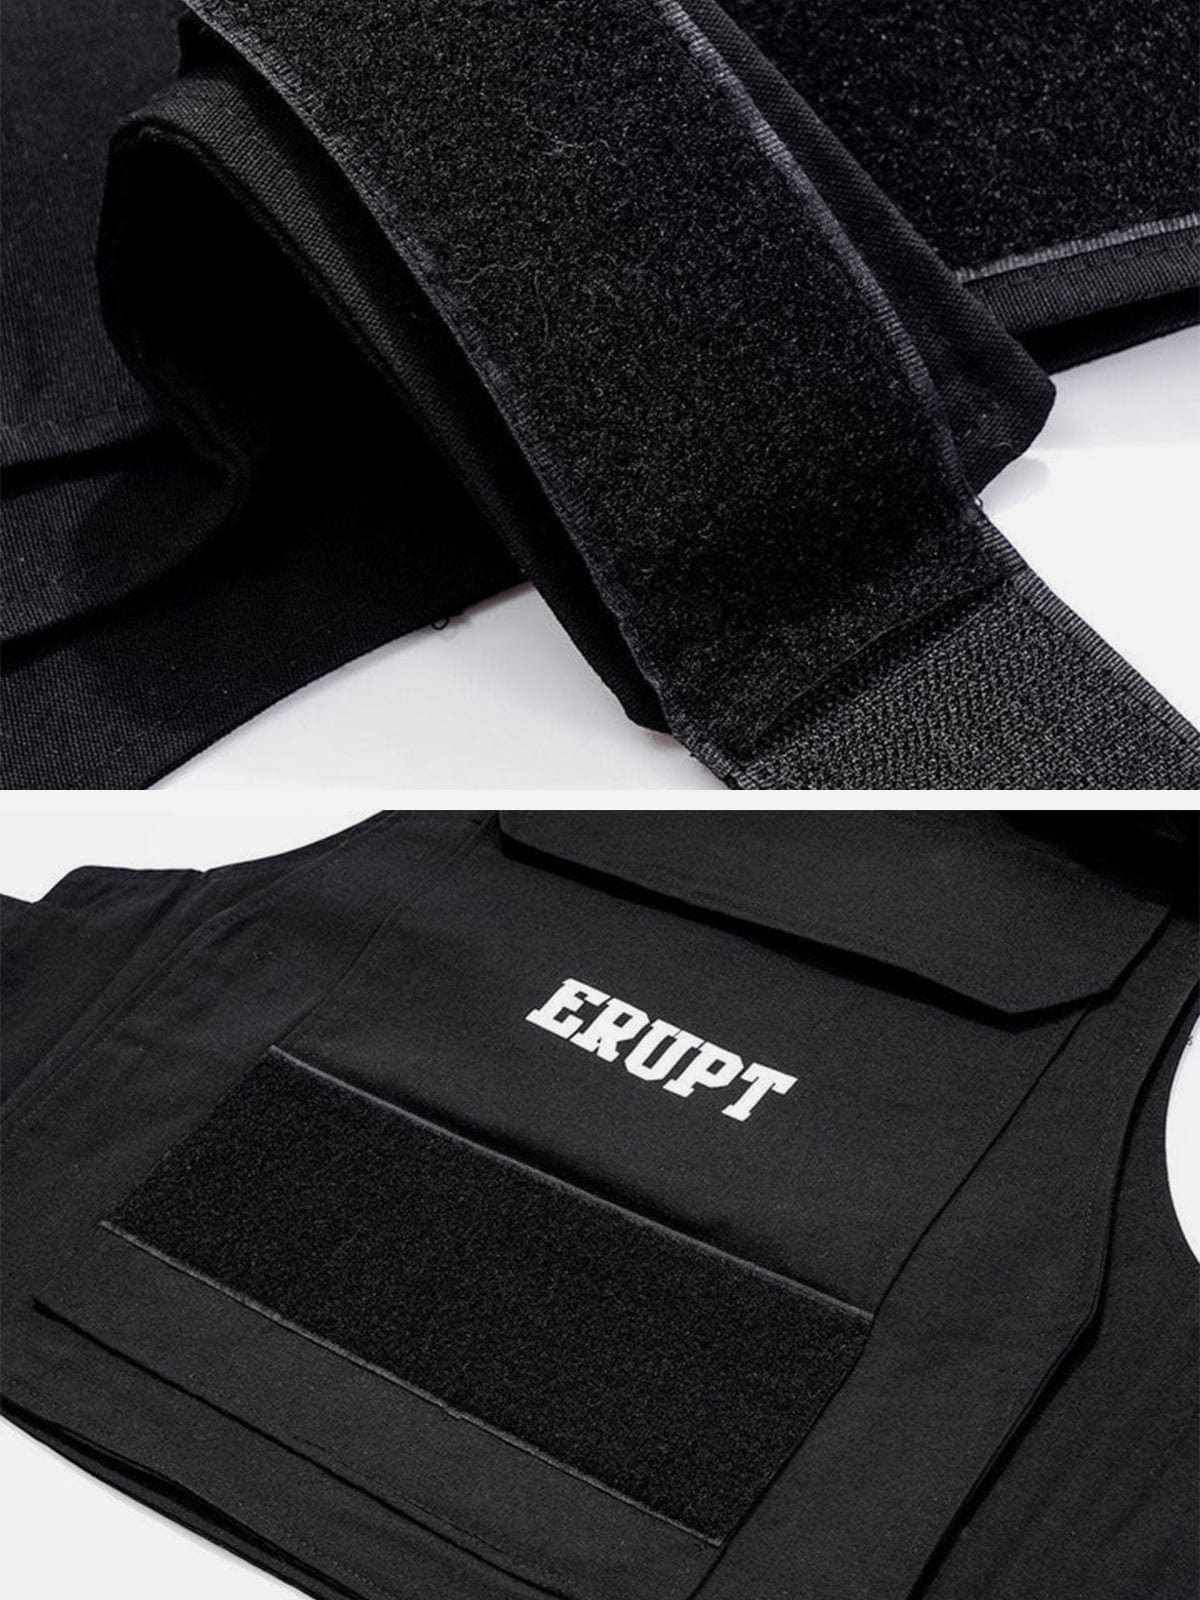 Techwear Velcro Print Pockets Vest Streetwear Brand Techwear Combat Tactical YUGEN THEORY